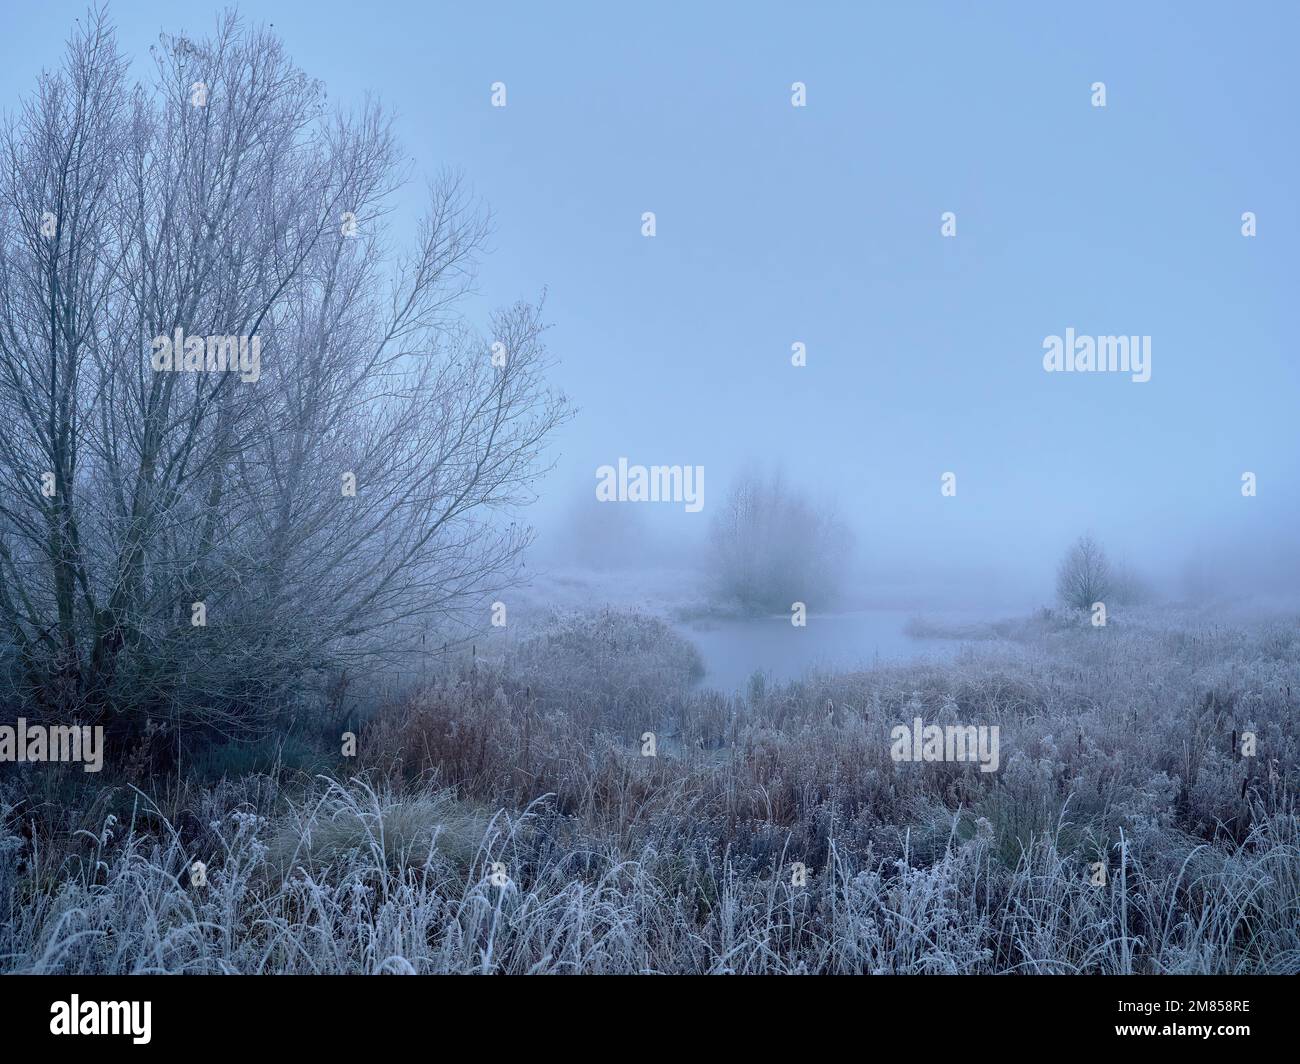 L’arrivo dell’inverno nel Regno Unito, con il freddo scatto e la nebbia che trasformano il familiare paesaggio boschivo sul lago in uno spazio liminale da sogno. Foto Stock